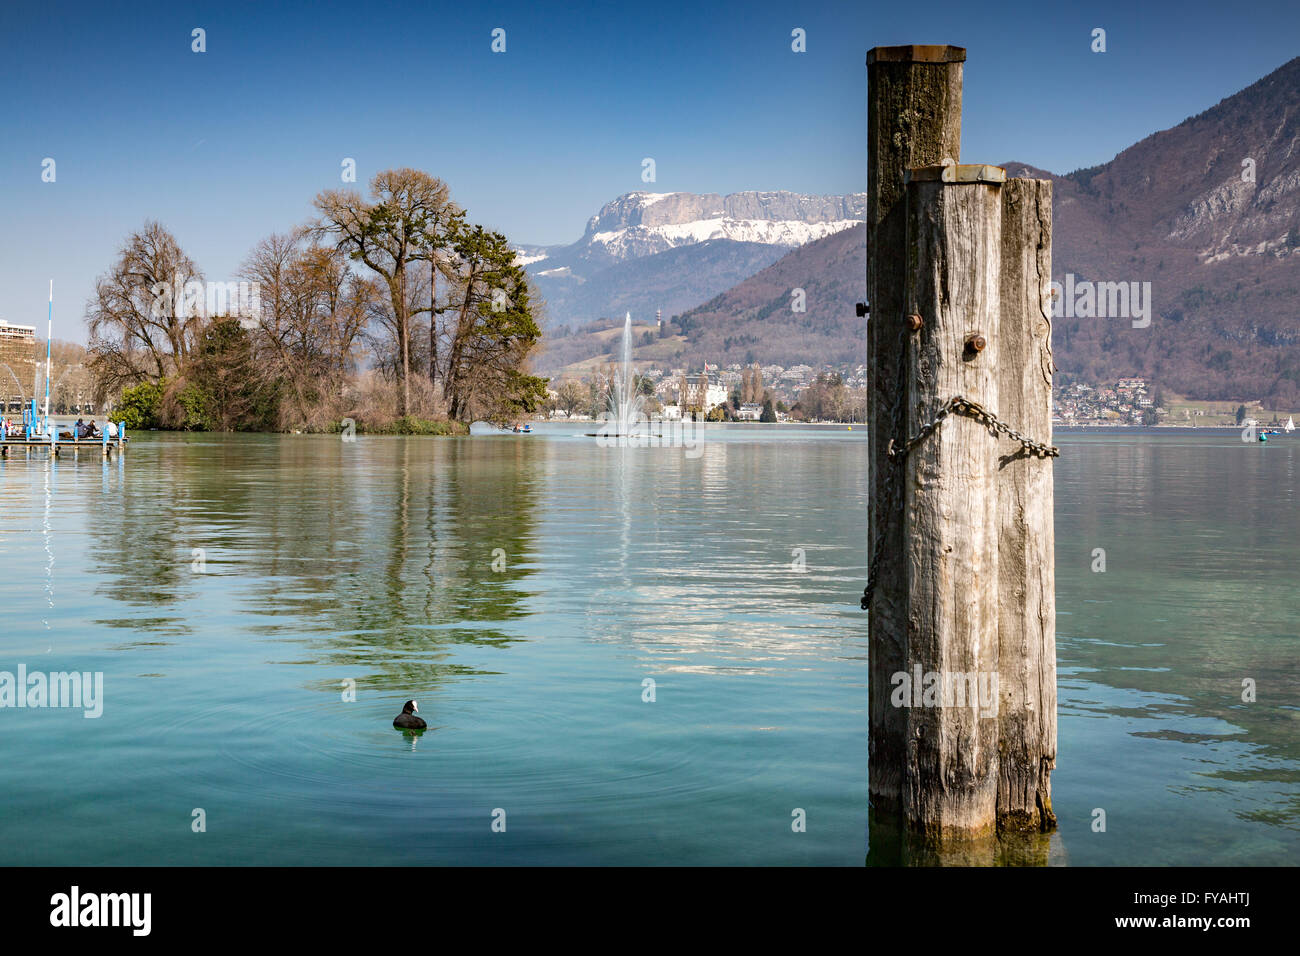 Blick auf den See von Annecy, Haute-Savoie, Frankreich. Alpine Landschaft mit Alpen im Hintergrund. Stockfoto